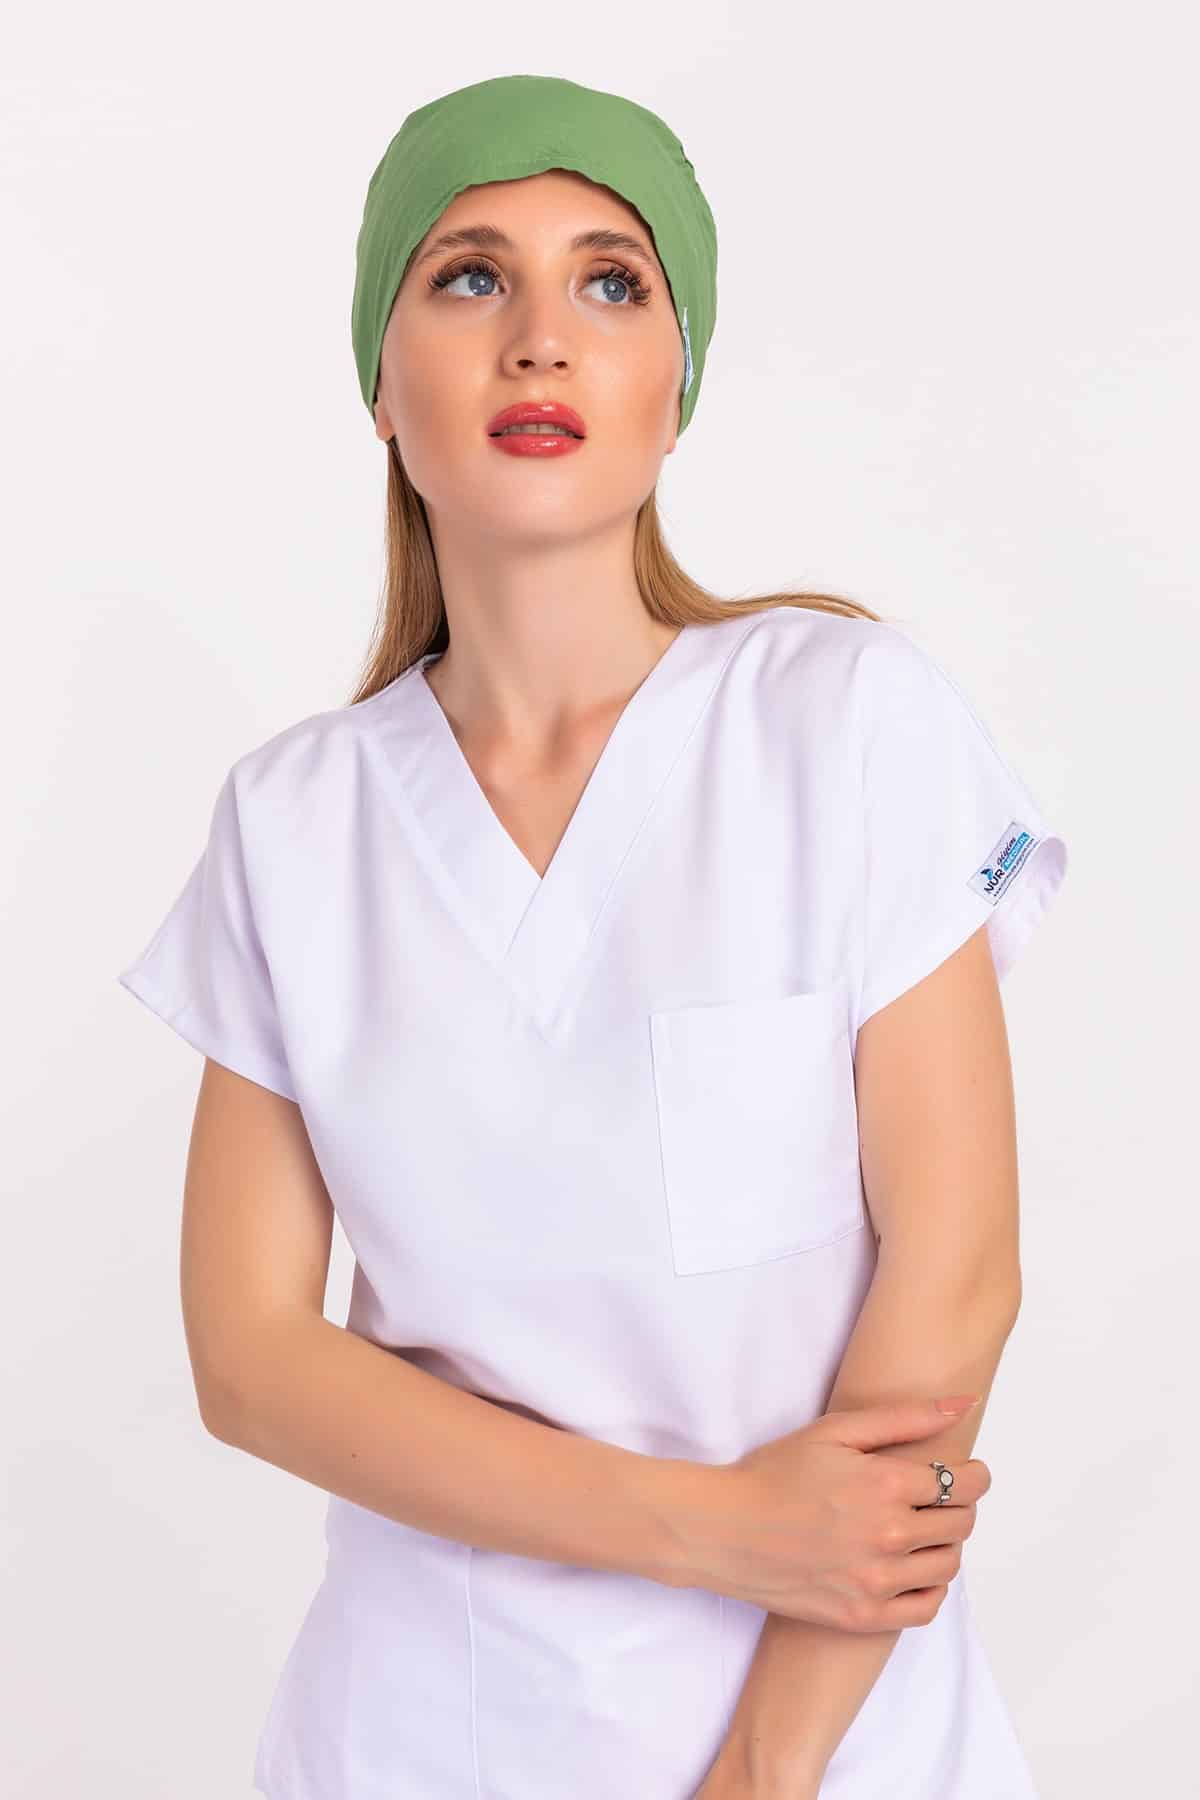 Düz Fıstık Yeşili Renk Doktor Hemşire Hastane Aşçı Medikal Cerrahi Bone - Pazaribu